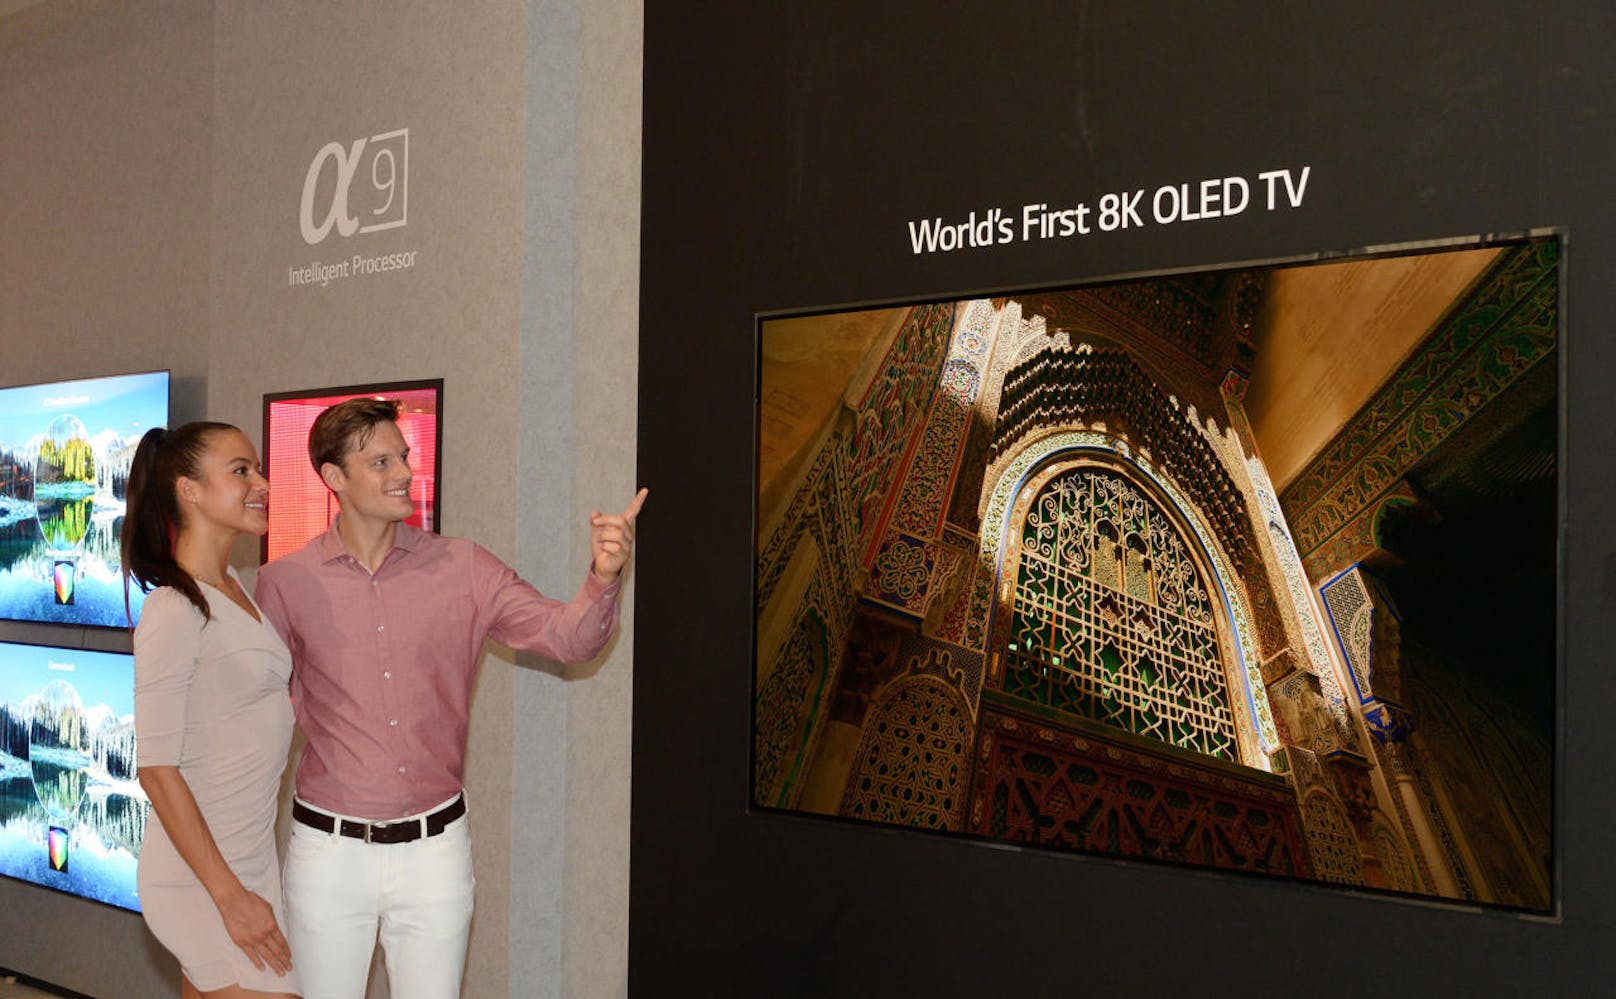 LG Electronics stellt auf der IFA 2018 außerdem den weltweit ersten 8K-OLED-TV mit einer Auflösung von 7.680 x 4.320 Bildpunkten vor. Das gigantische Gerät mit einer Bildschirmdiagonale von 88 Zoll (2,23 Meter) verfügt über mehr als 33 Millionen Licht-emittierende Pixel.